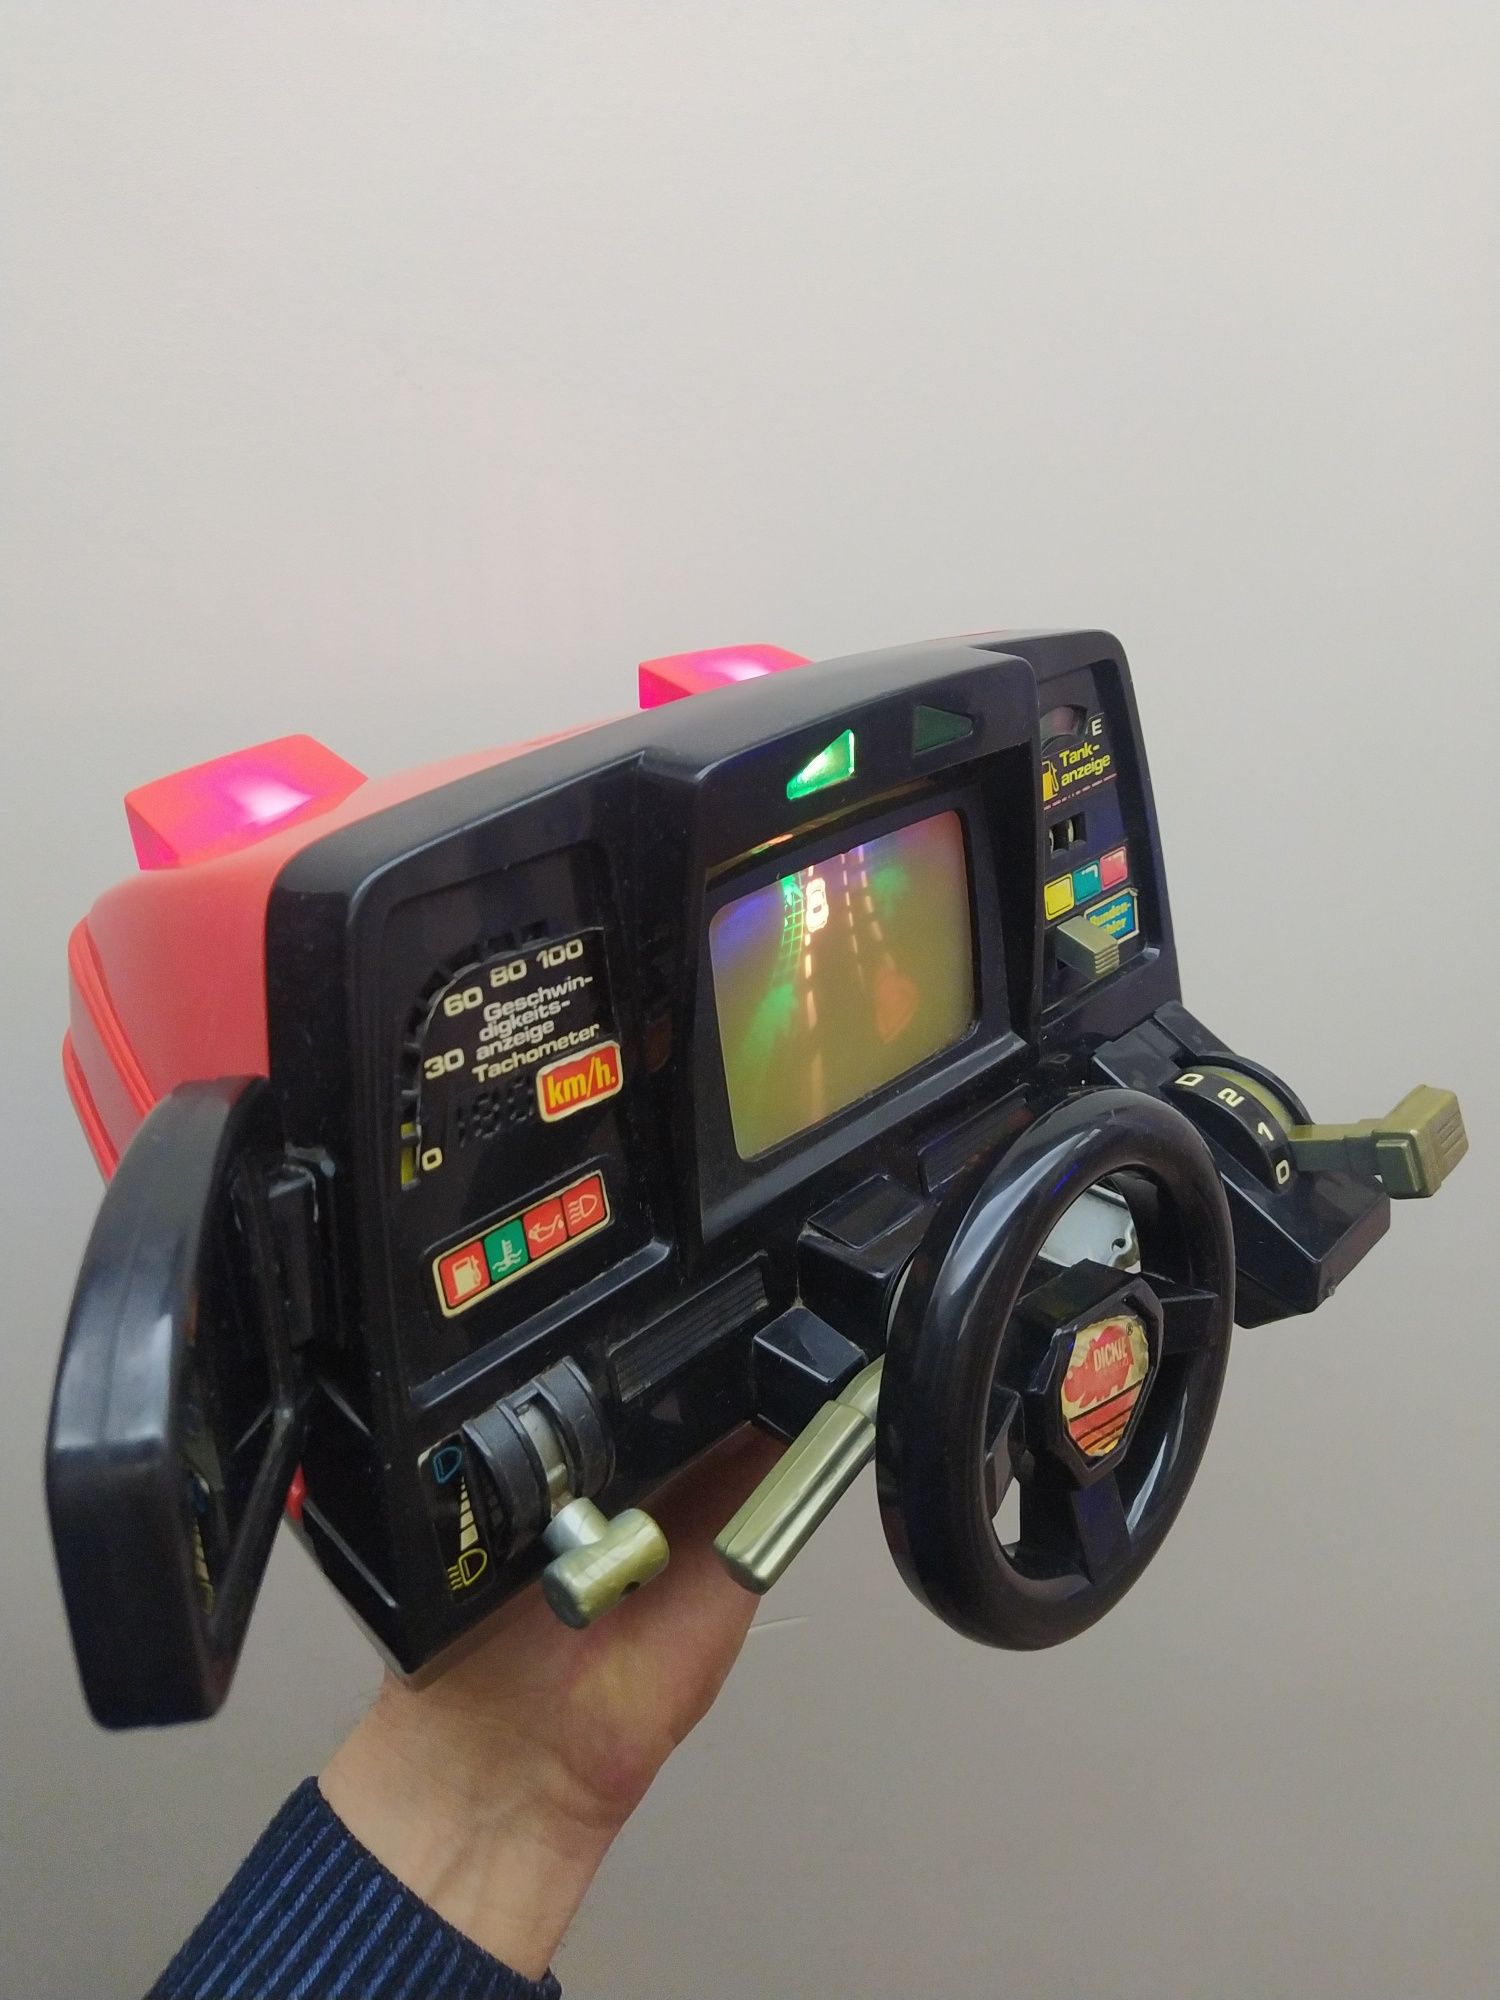 Dickie Spielzeug retro kokpit konsola symulator wyścigów hobby